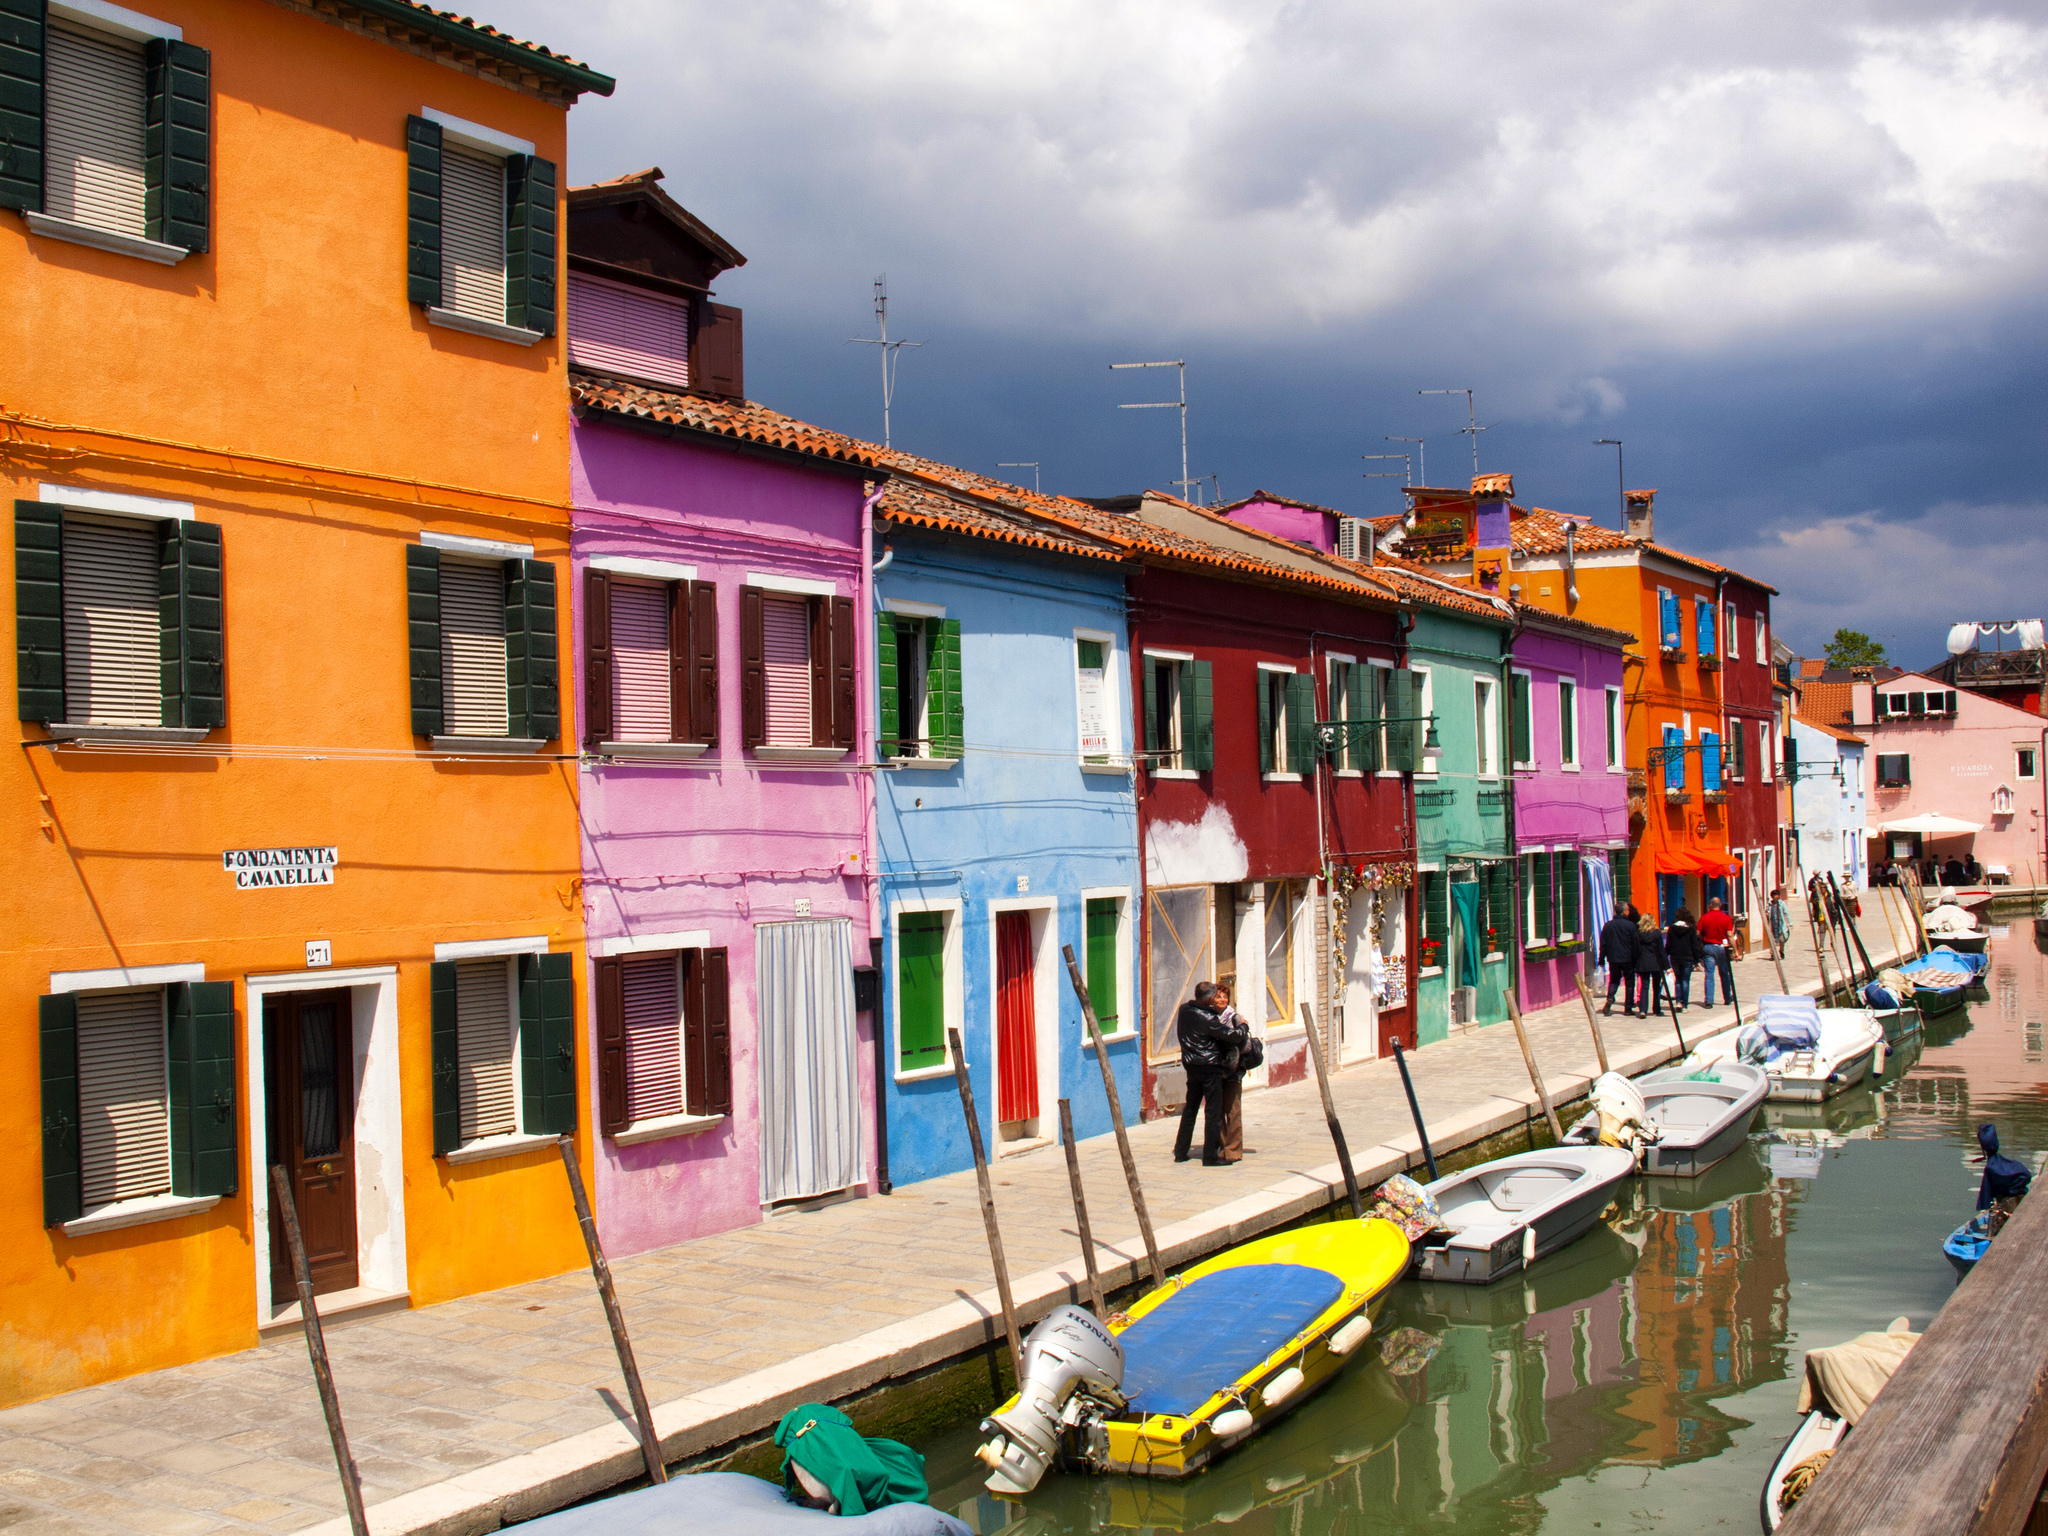 Rumah-rumah nelayan yang berwarna-warni di Pulau Burano. Sebuah pulau cantik di bagian utara laguna Venesia, Italia. Flickr - Kevin Poh.